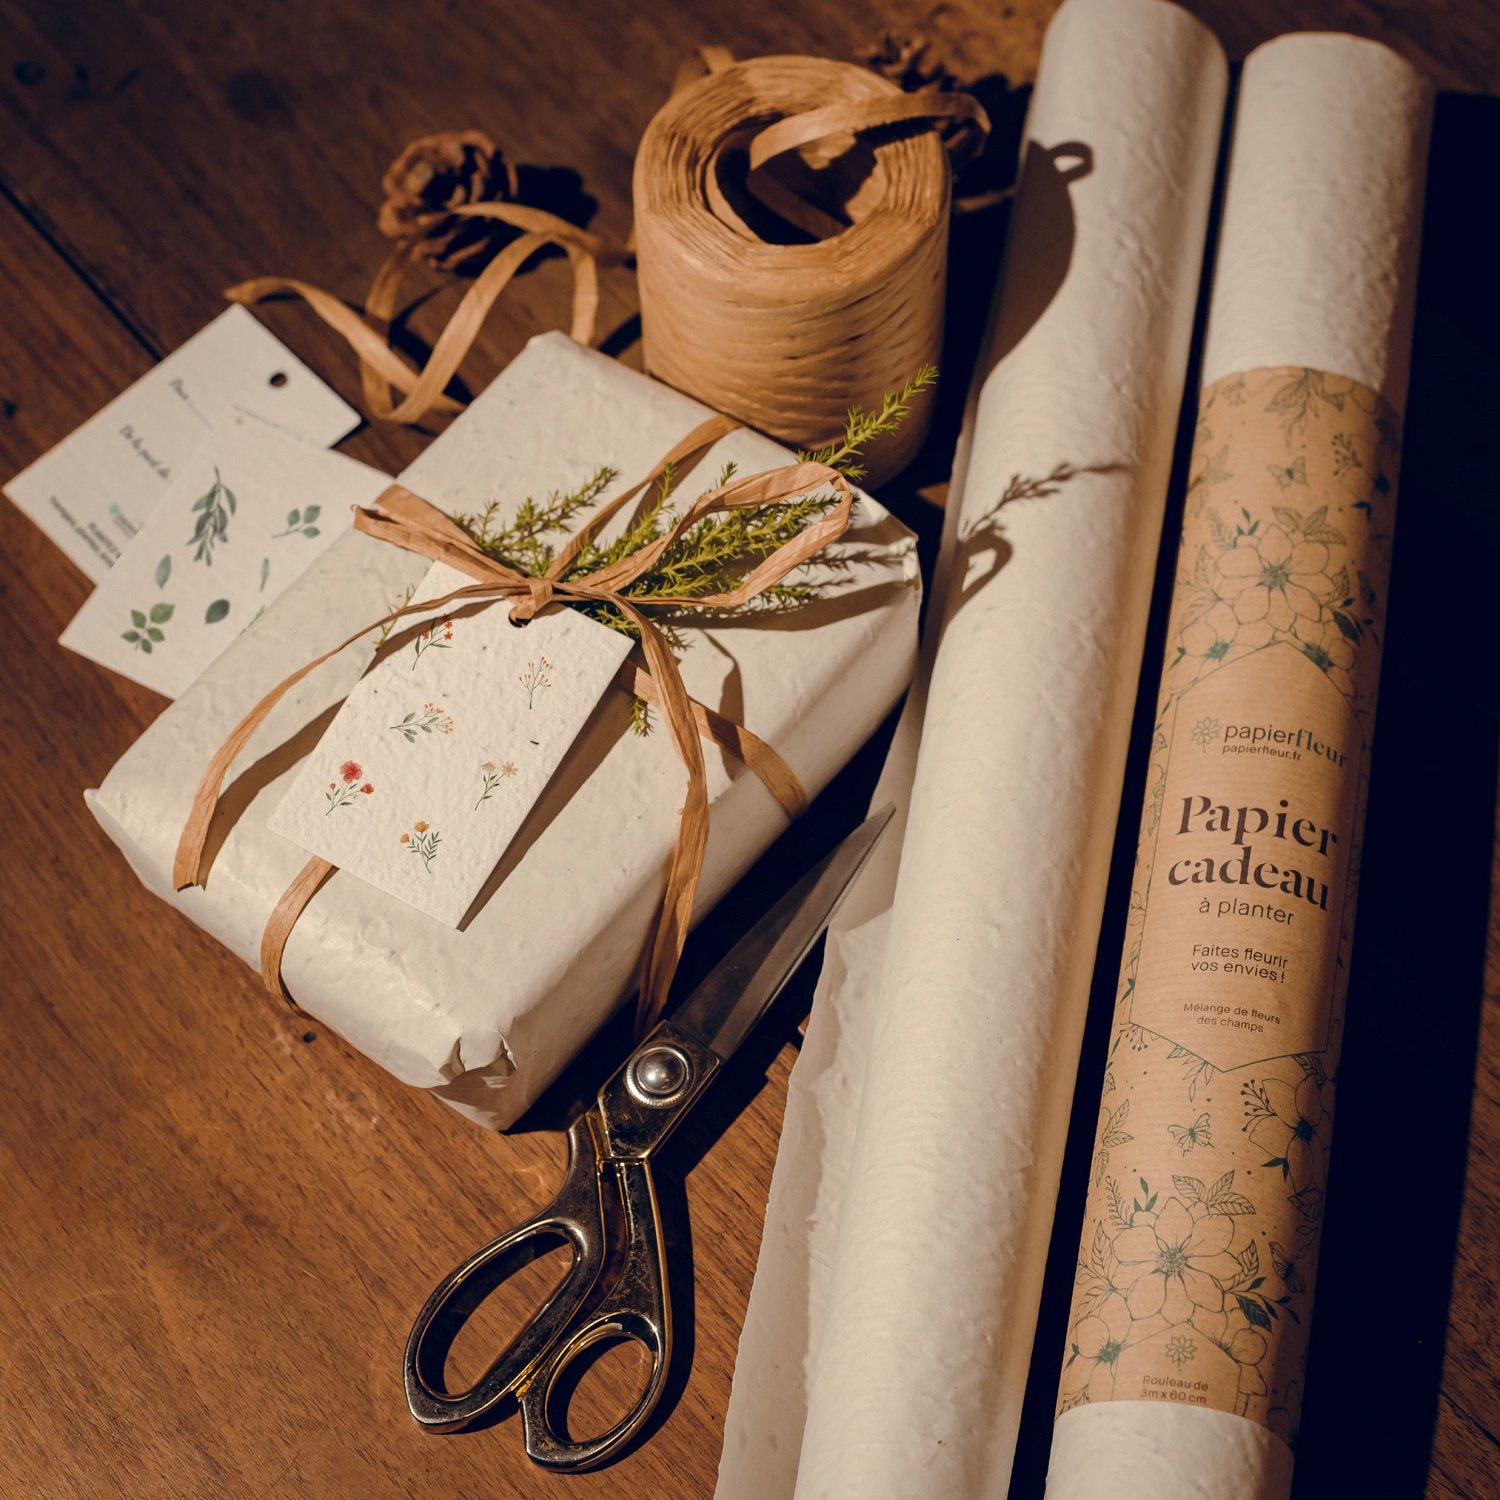 Rouleau papier cadeau Noël vert : emballage cadeau vintage chic